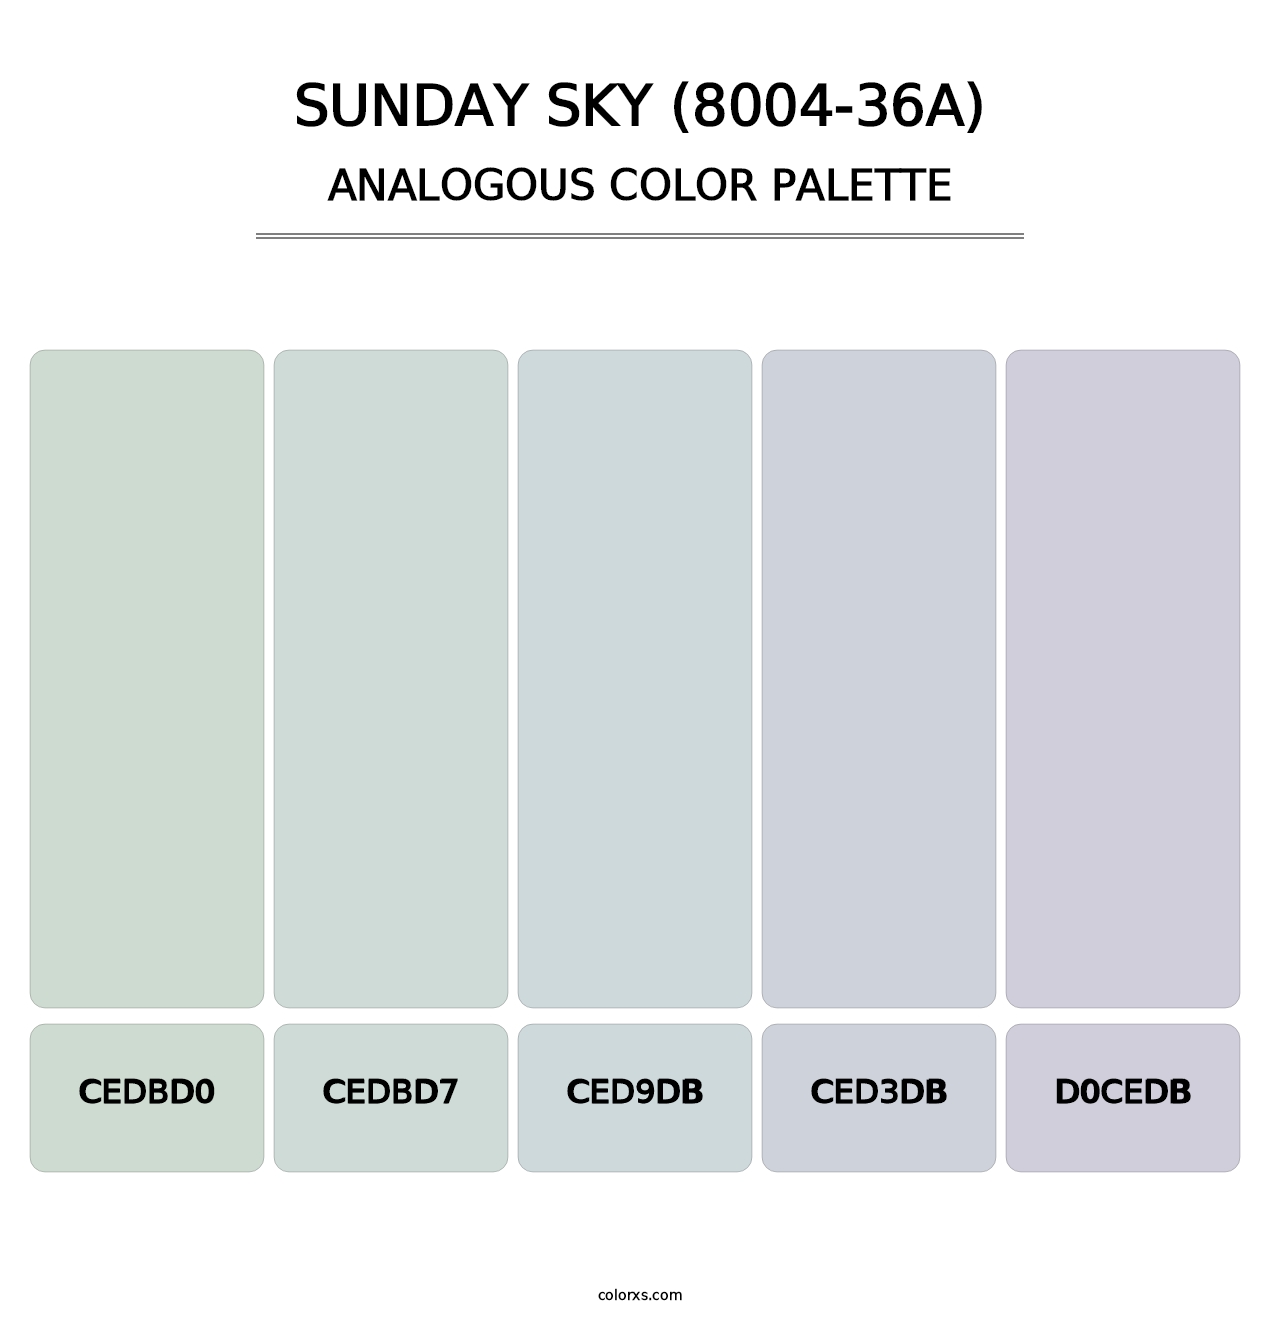 Sunday Sky (8004-36A) - Analogous Color Palette